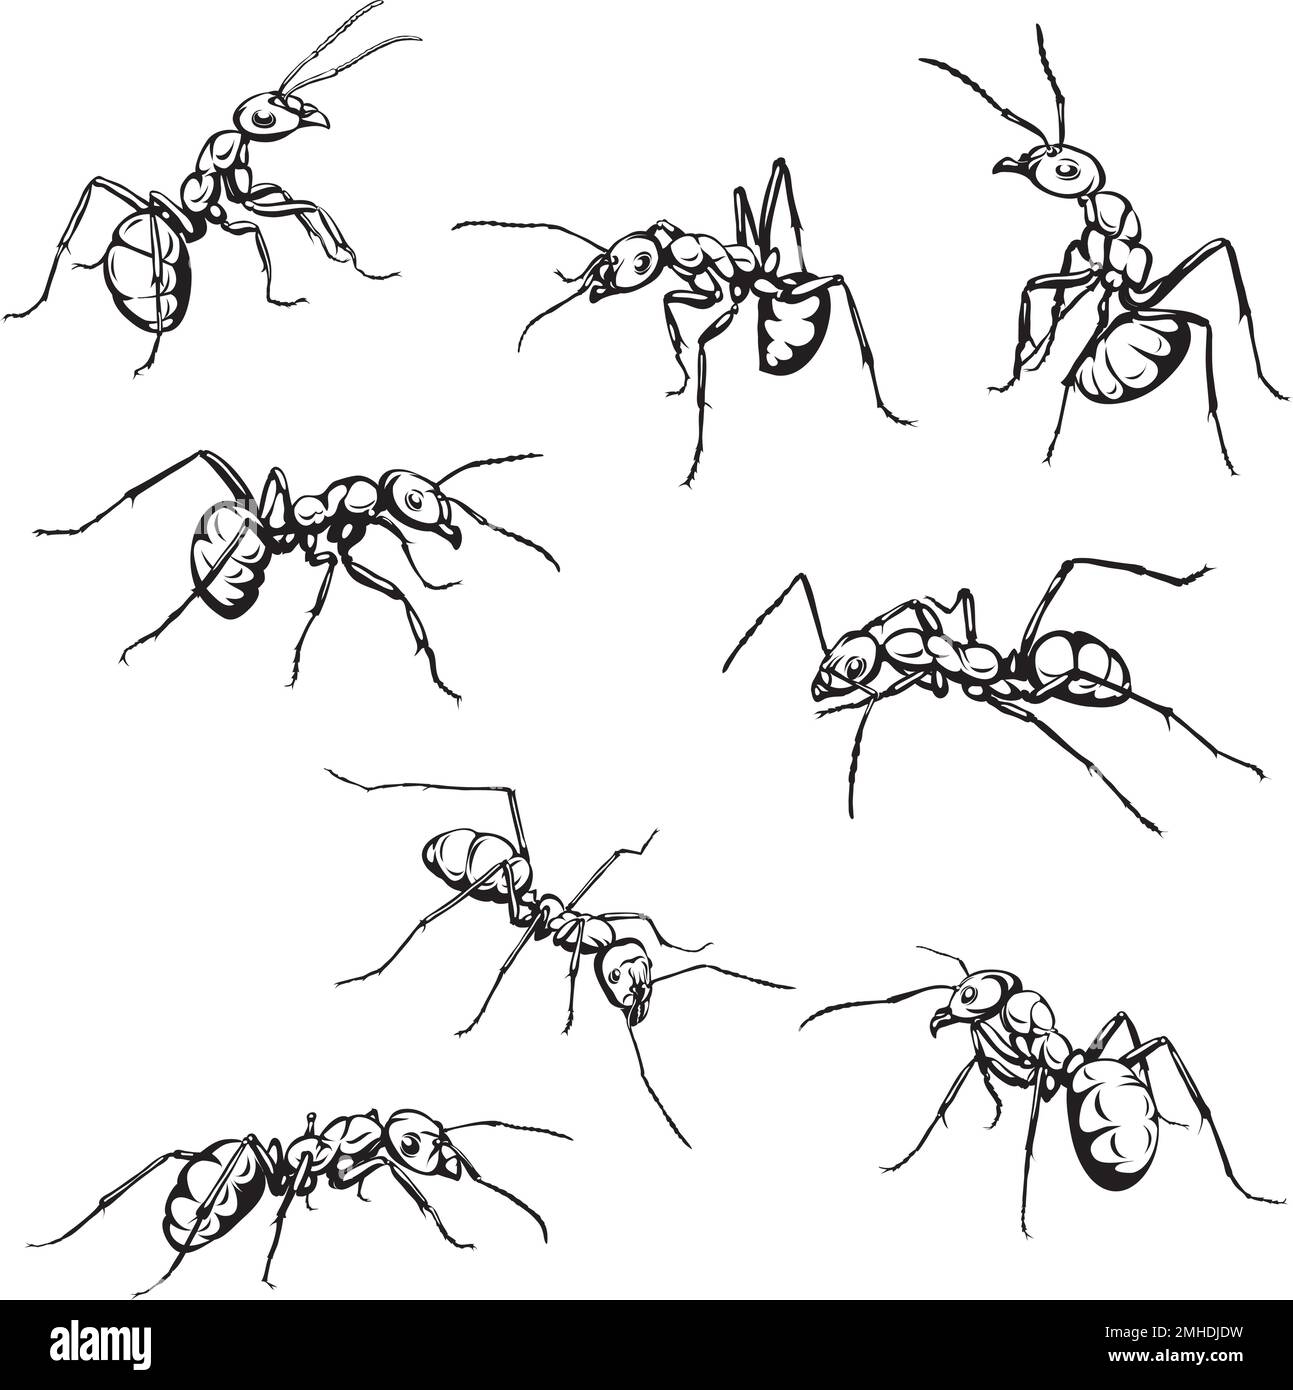 hormiga, insecto, rastreo, negro, vector, dibujo, silueta, ojos, diseño, símbolo, imagen, aislado, ilustración, grande, abdomen, patas, naturaleza, realis Ilustración del Vector